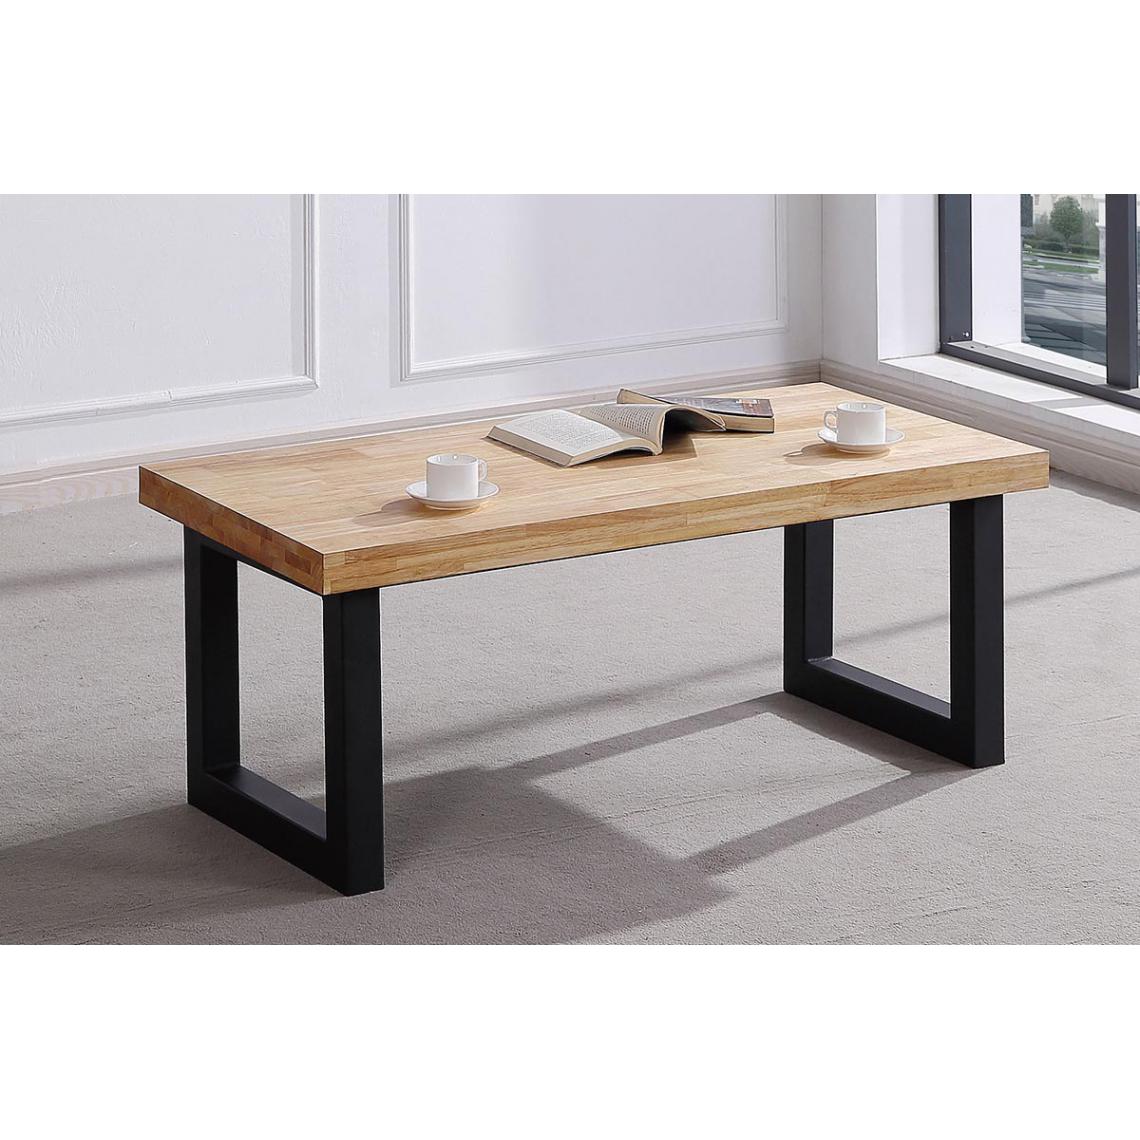 Pegane - Table basse relevable en bois coloris chêne sauvage / pieds noir - Longueur 120 x profondeur 60 x hauteur 47 cm - Tables basses